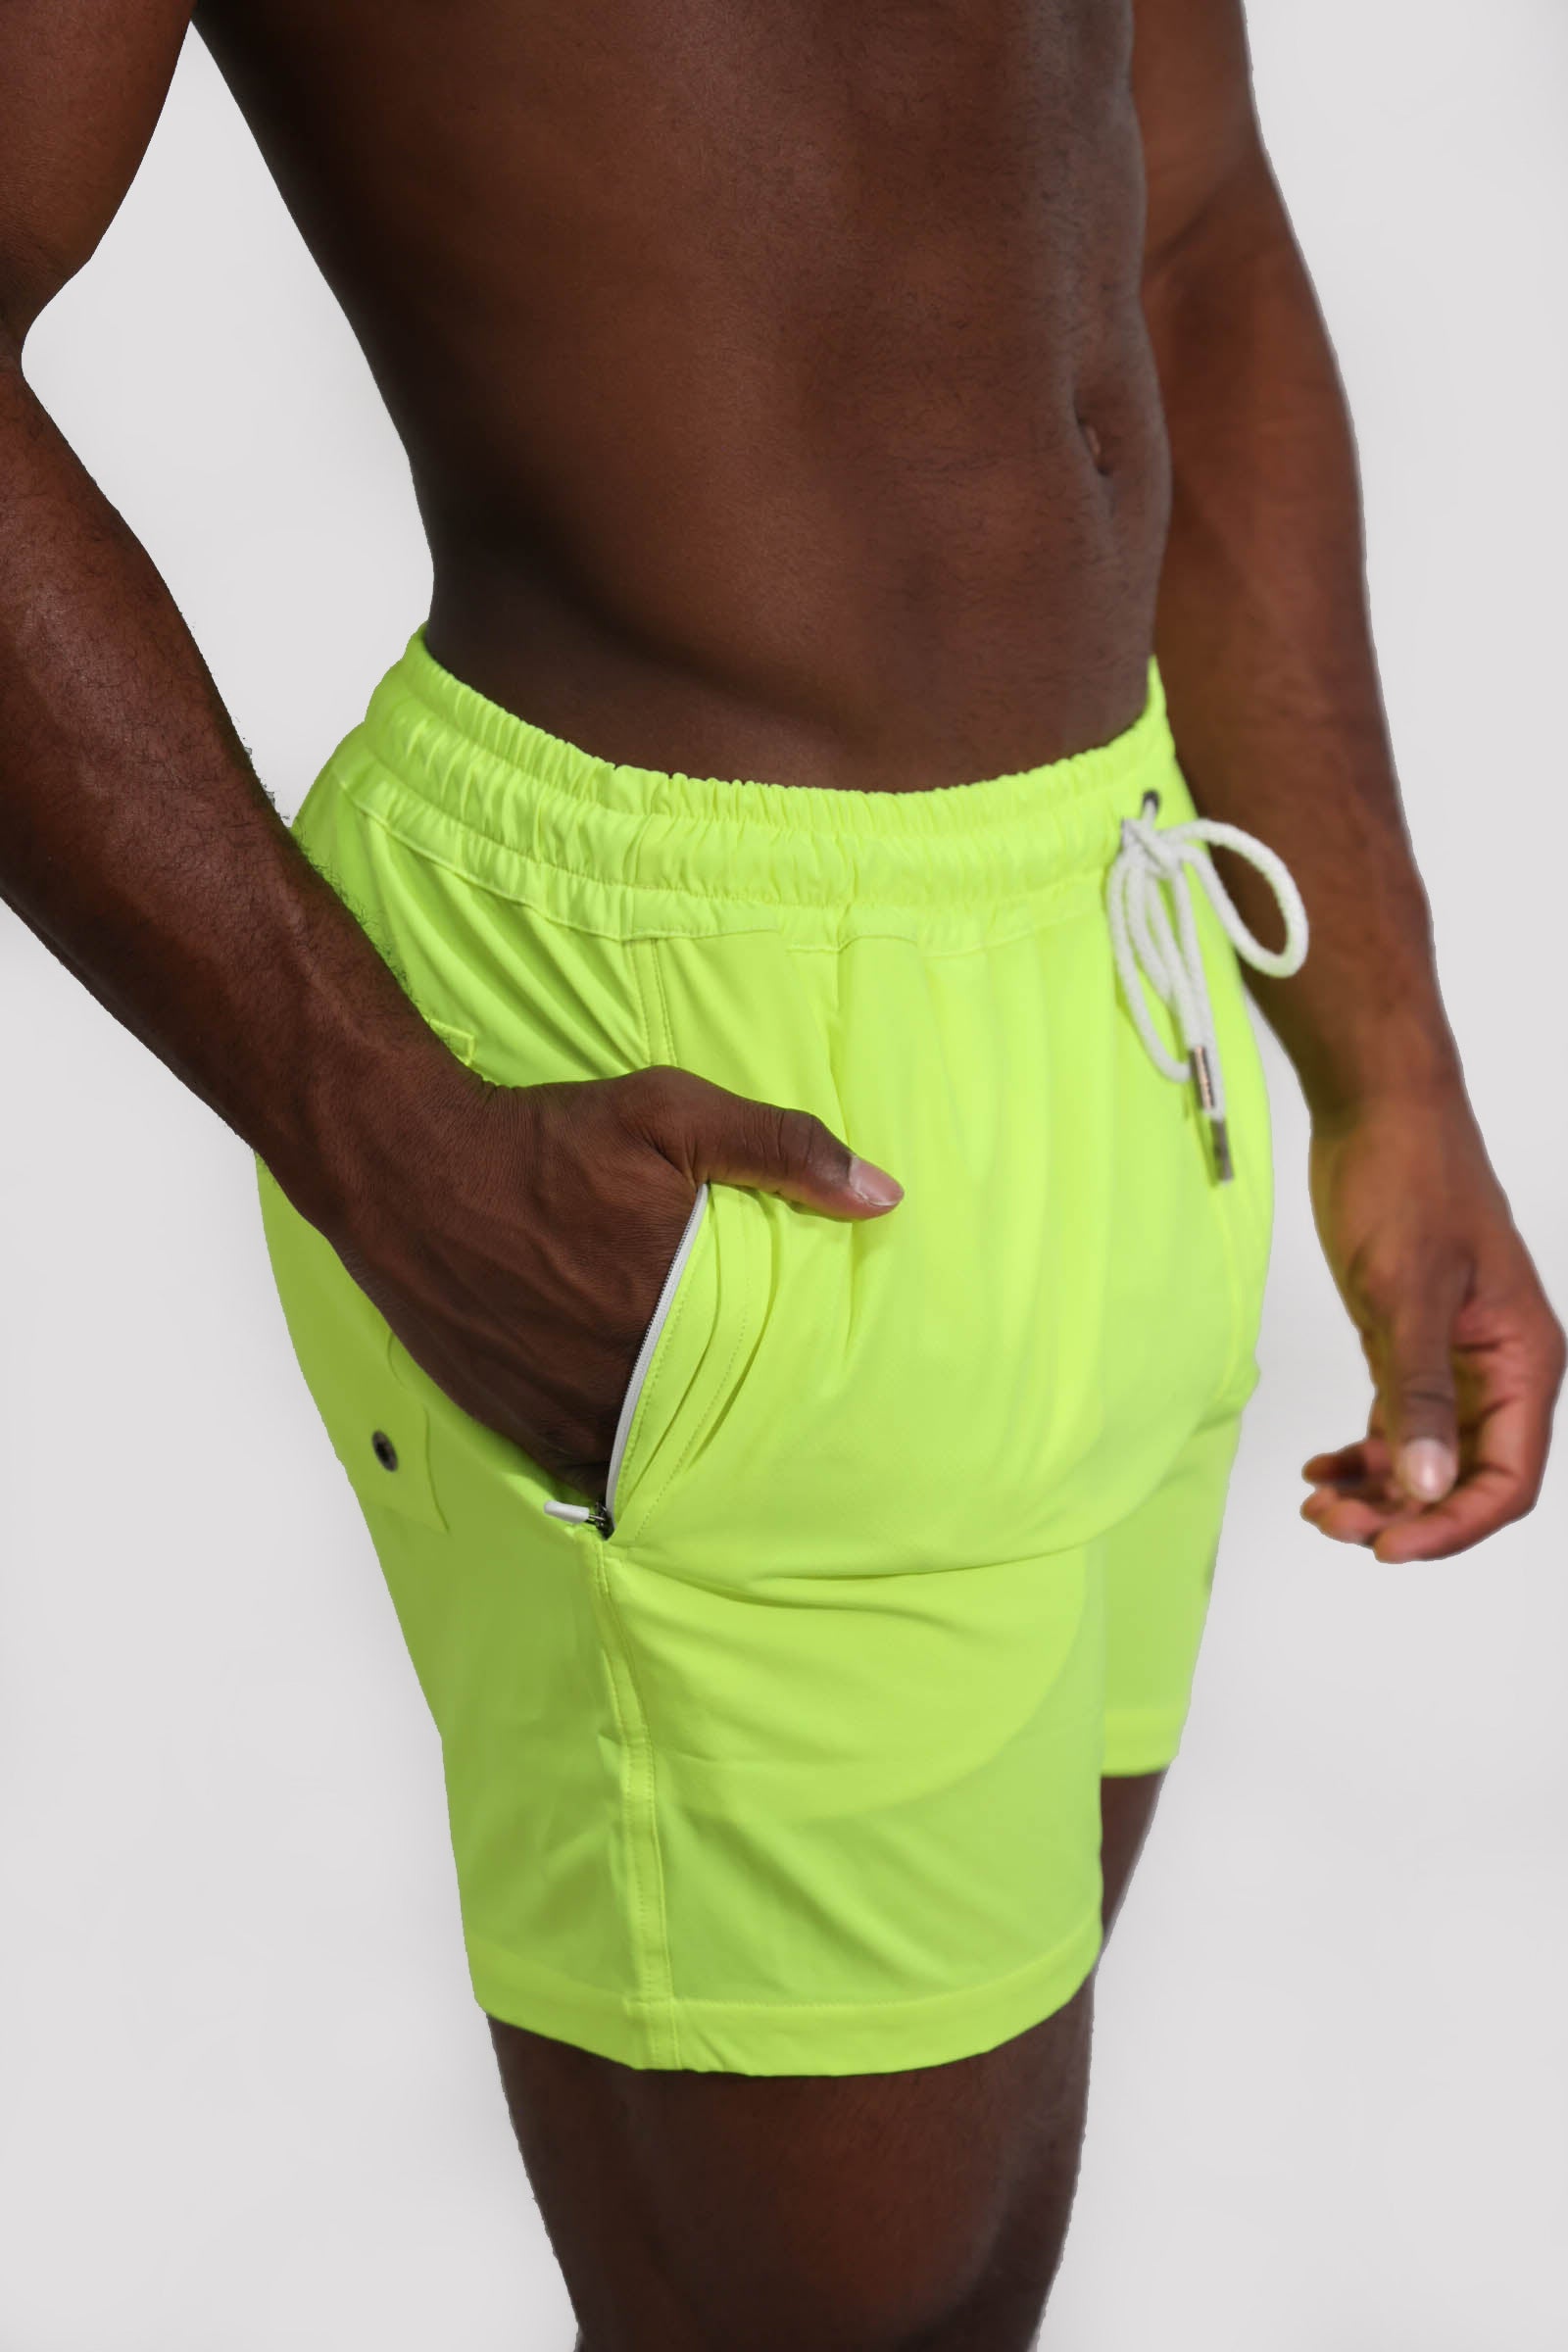 Neon Yellow Shorts 4.5"